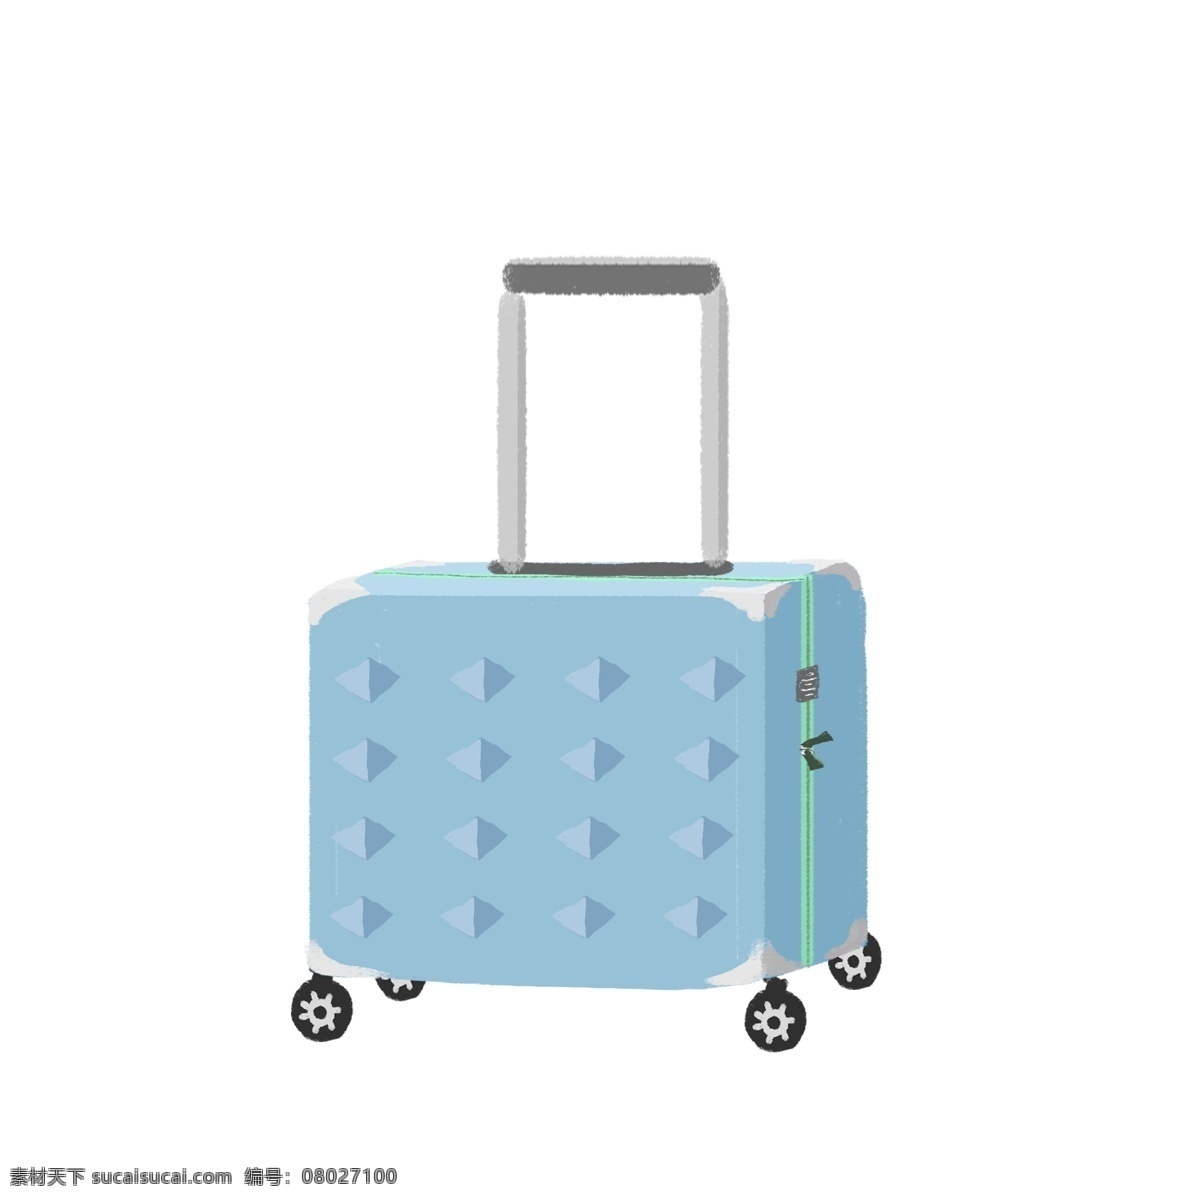 商用 手绘 简约 微 立体 行李箱 旅游出行 度假 元素 旅行